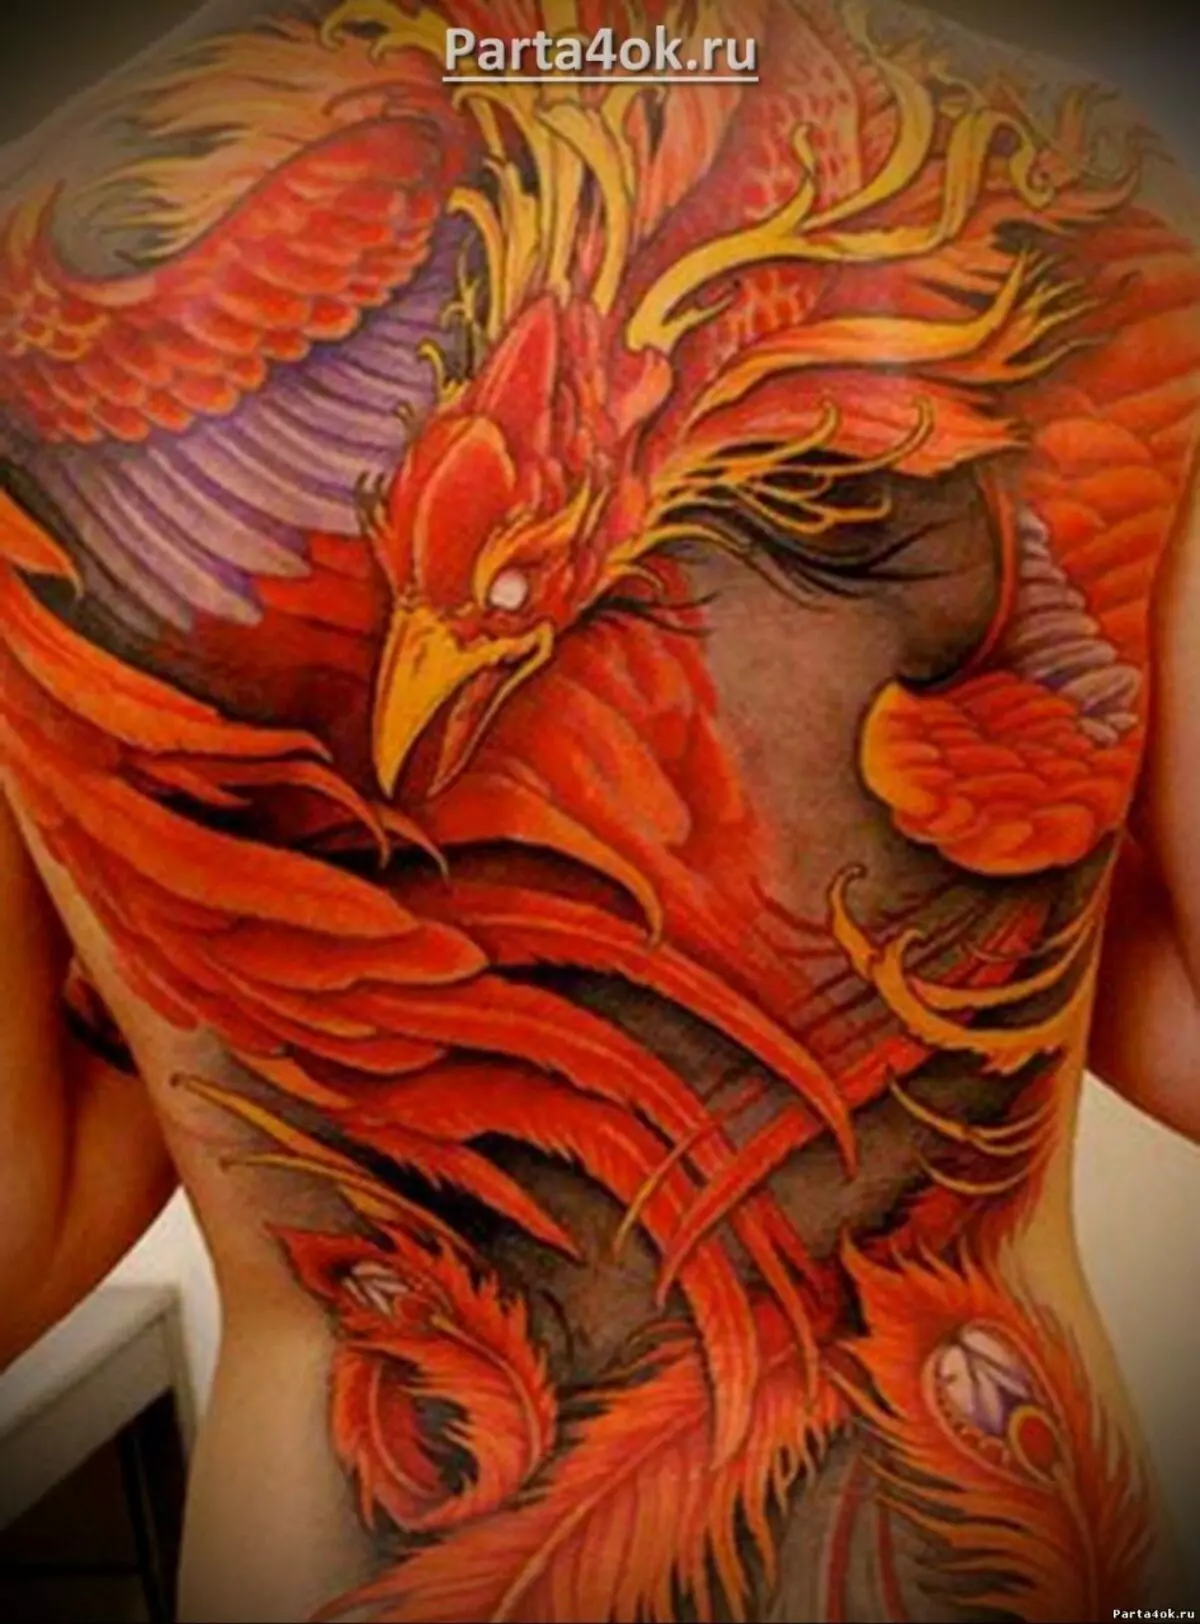 Татуировкасы «Firebird»: Қыздар мен еркектерге арналған татуировкалардың мәні, эскиздері. Асқазандағы татуировкасы, қолында, жамбас немесе басқа жерде 14069_37